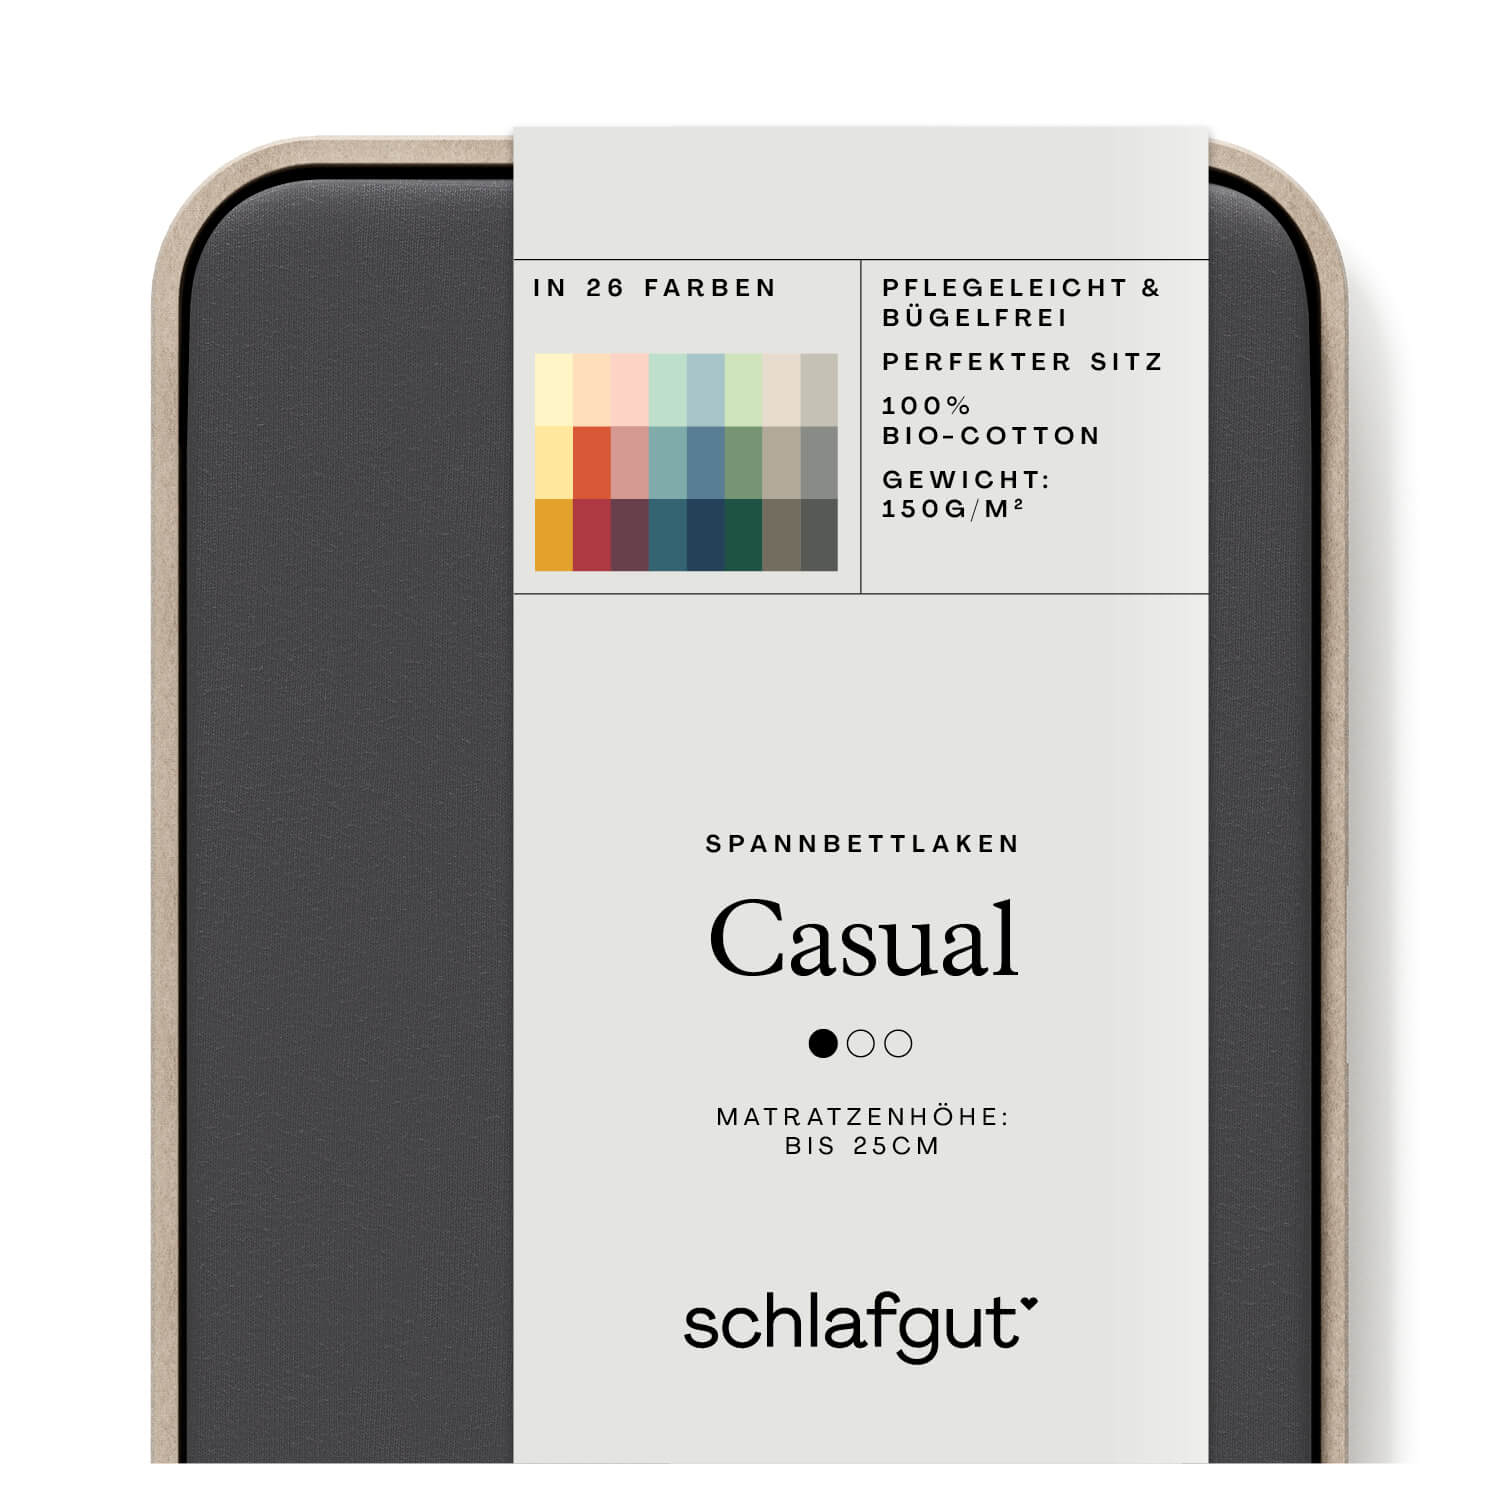 Das Produktbild vom Spannbettlaken der Reihe Casual in Farbe grey deep von Schlafgut